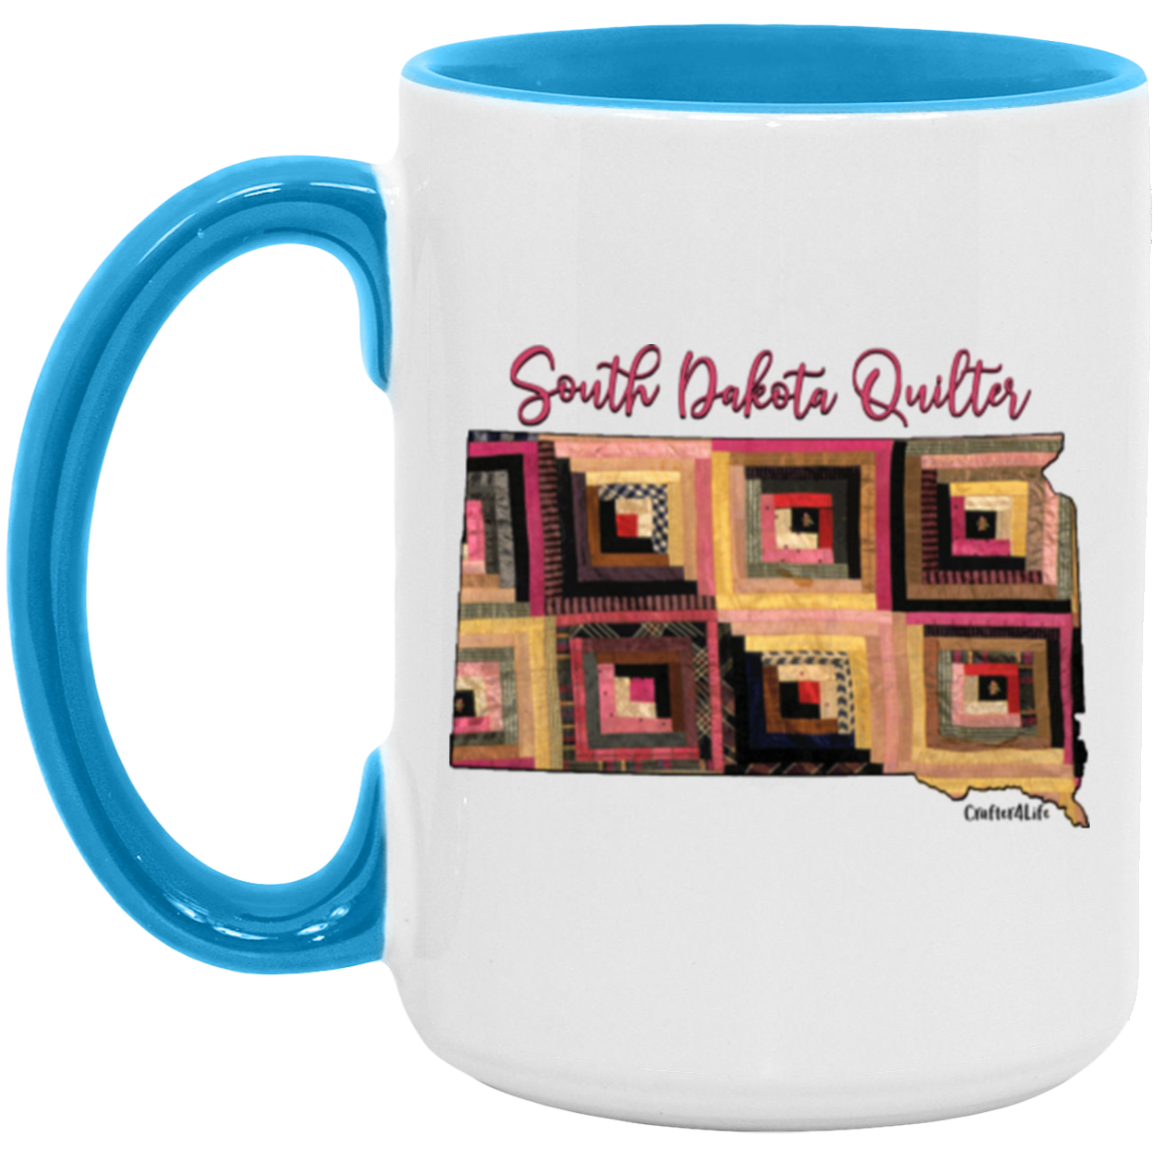 South Dakota Quilter Mugs